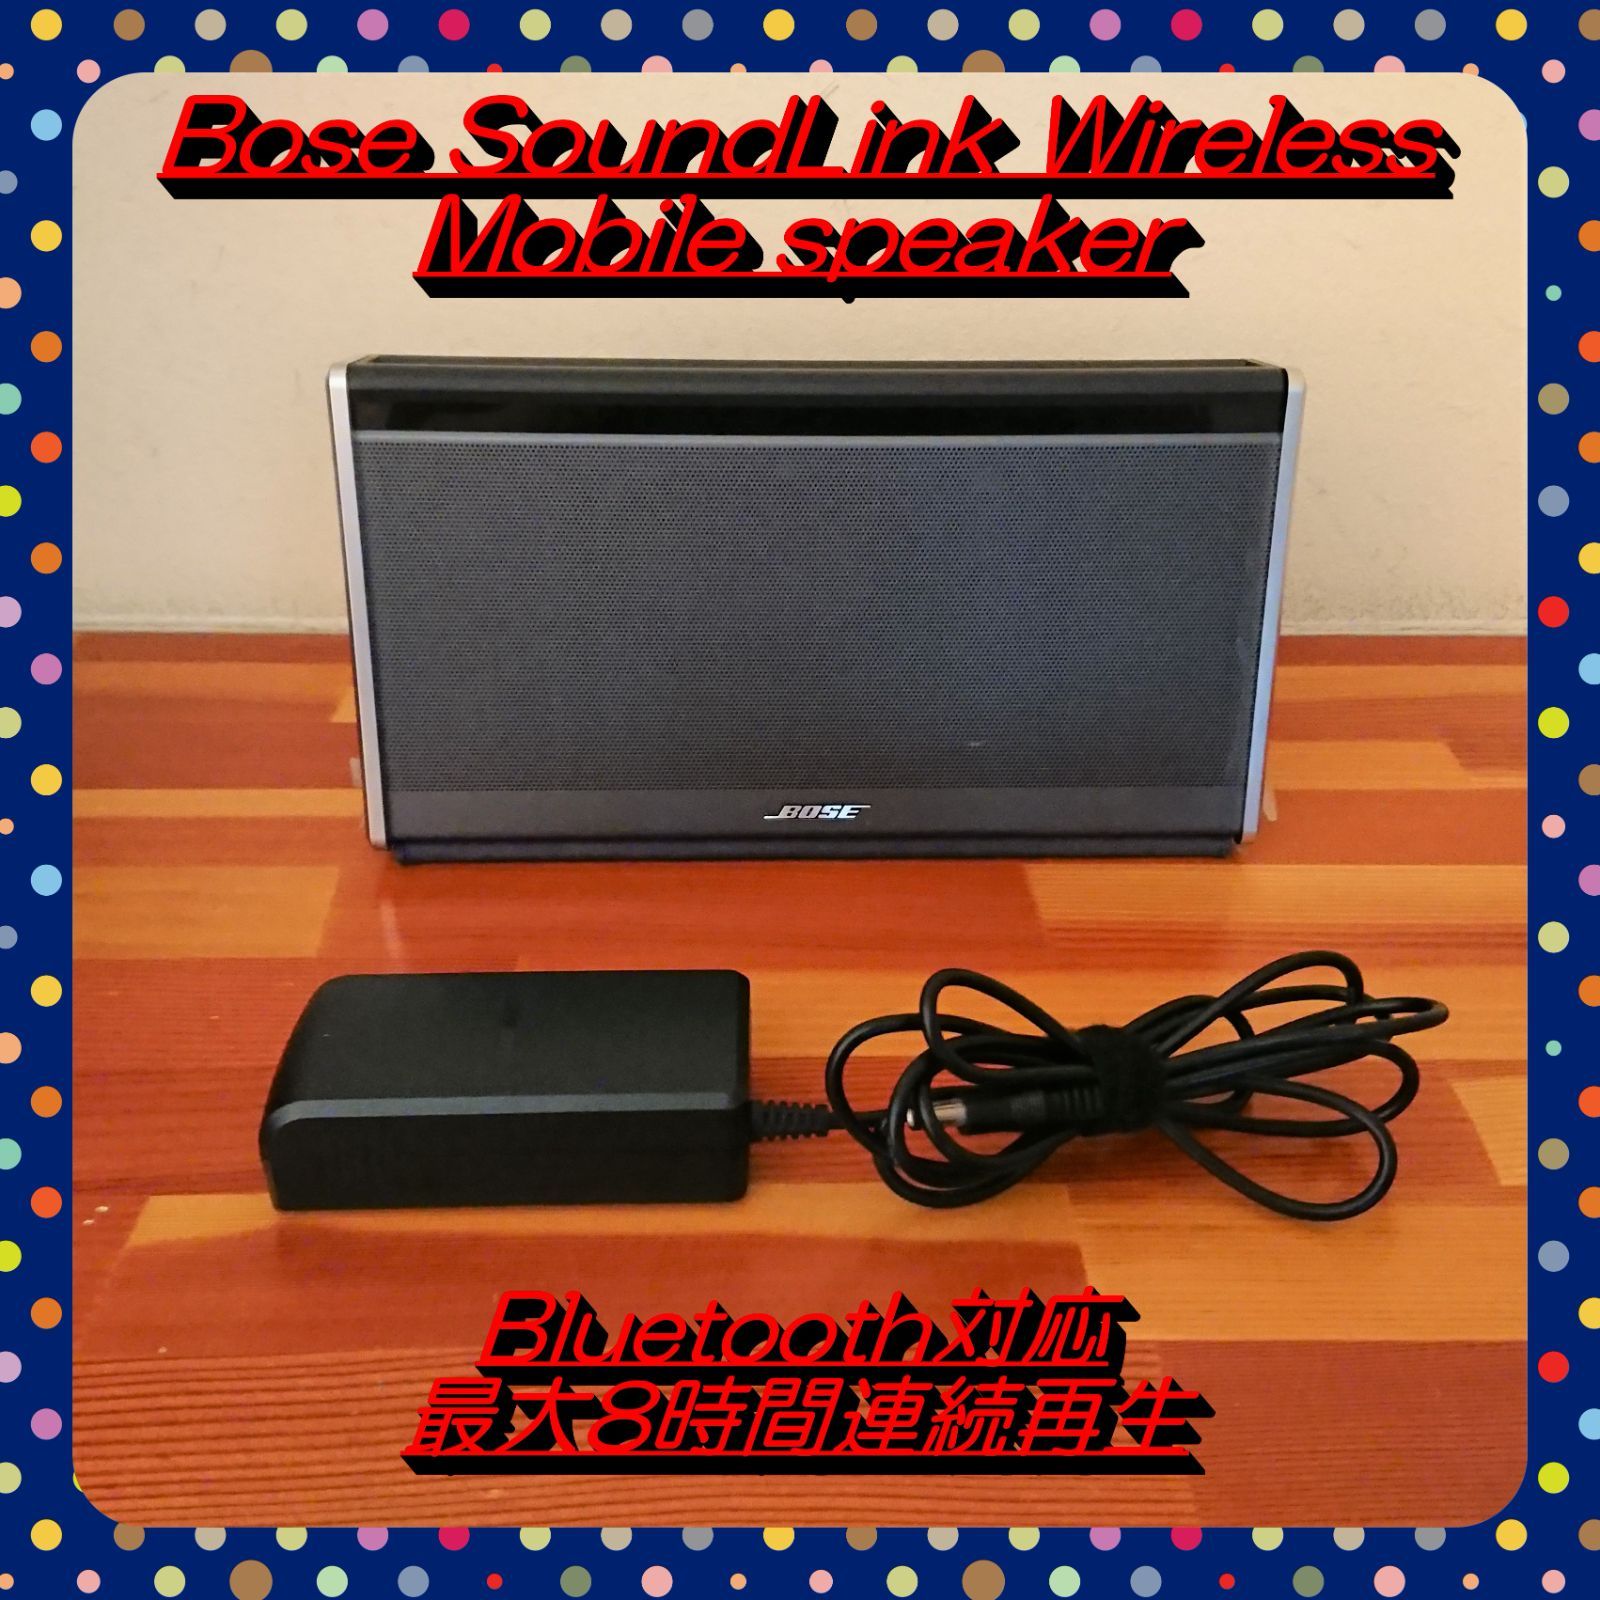 【大処分特価!!】Bose SoundLink Wireless Mobile speaker